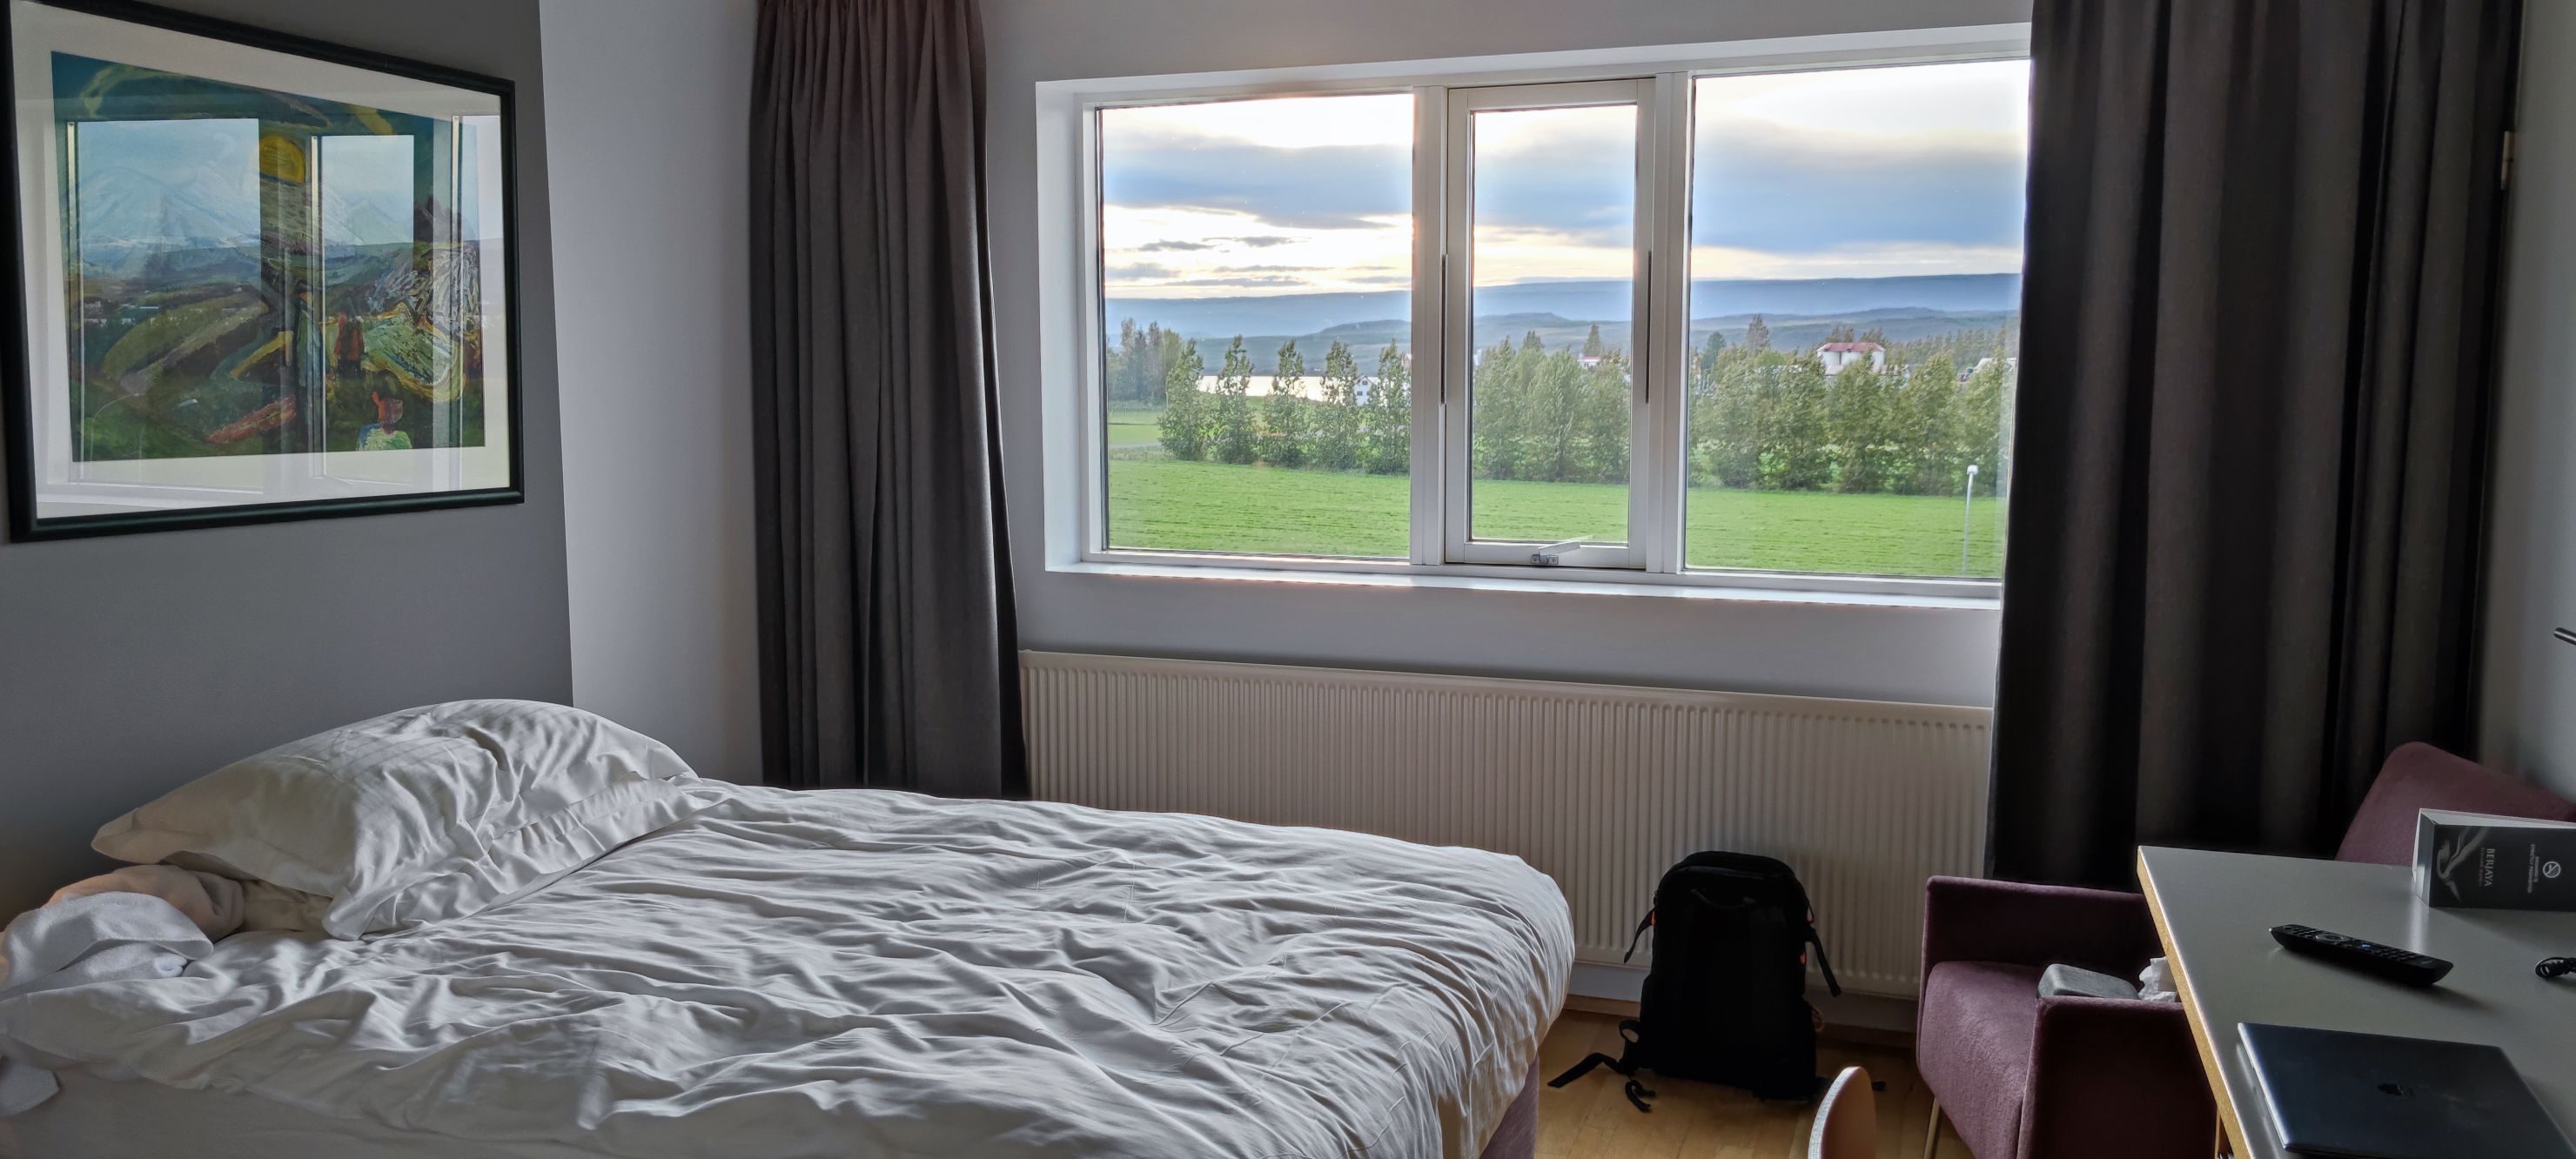 冰岛东部小镇旅店，风景好，房间较大，设施不错，免费停车。